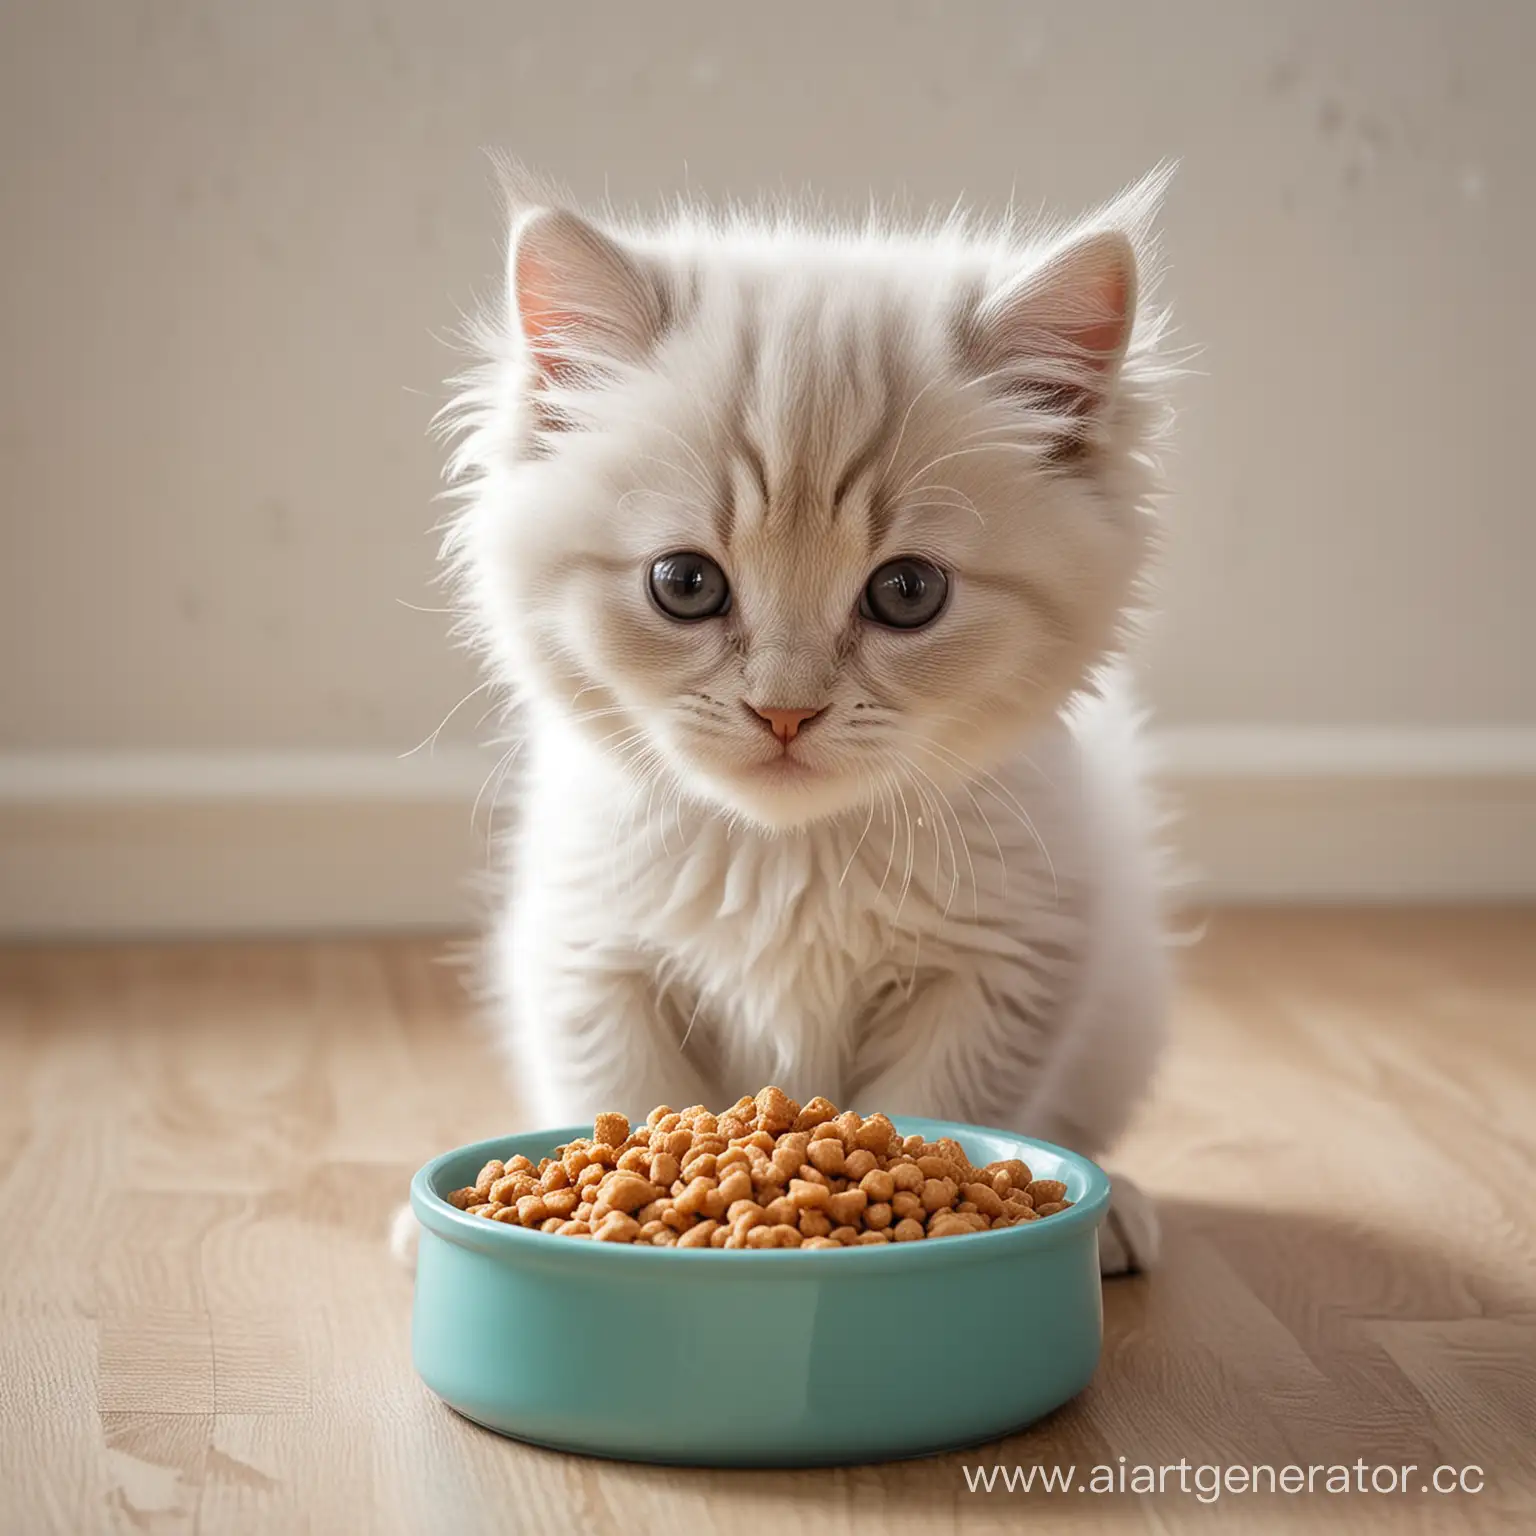 Очень пушистый котик кушает из миски кошачий корм